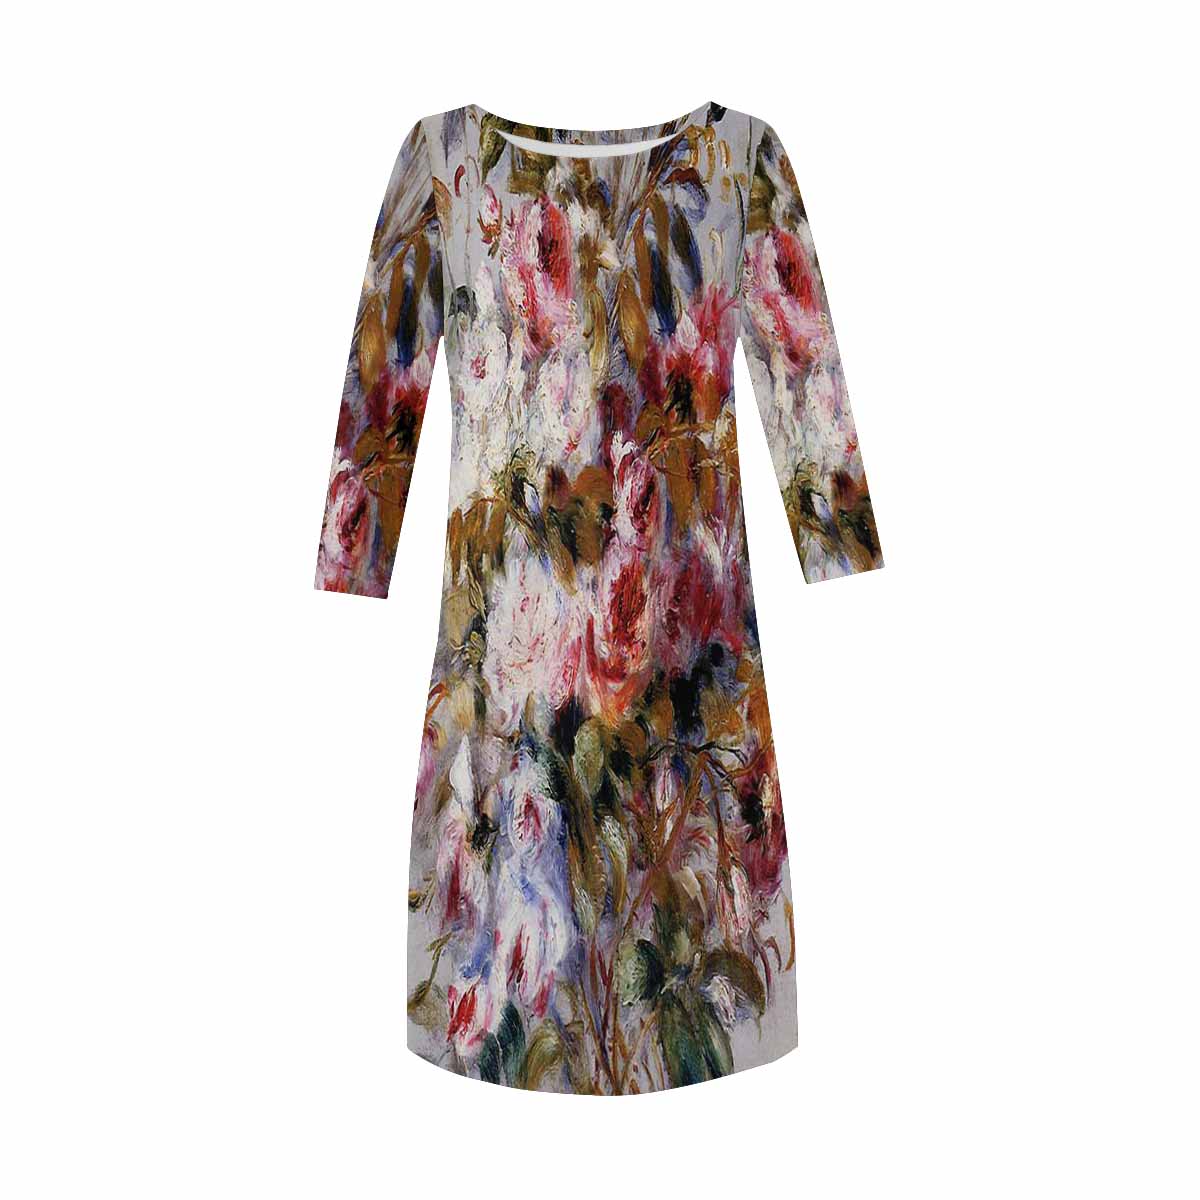 Vintage floral loose dress, model D29532 Design 12